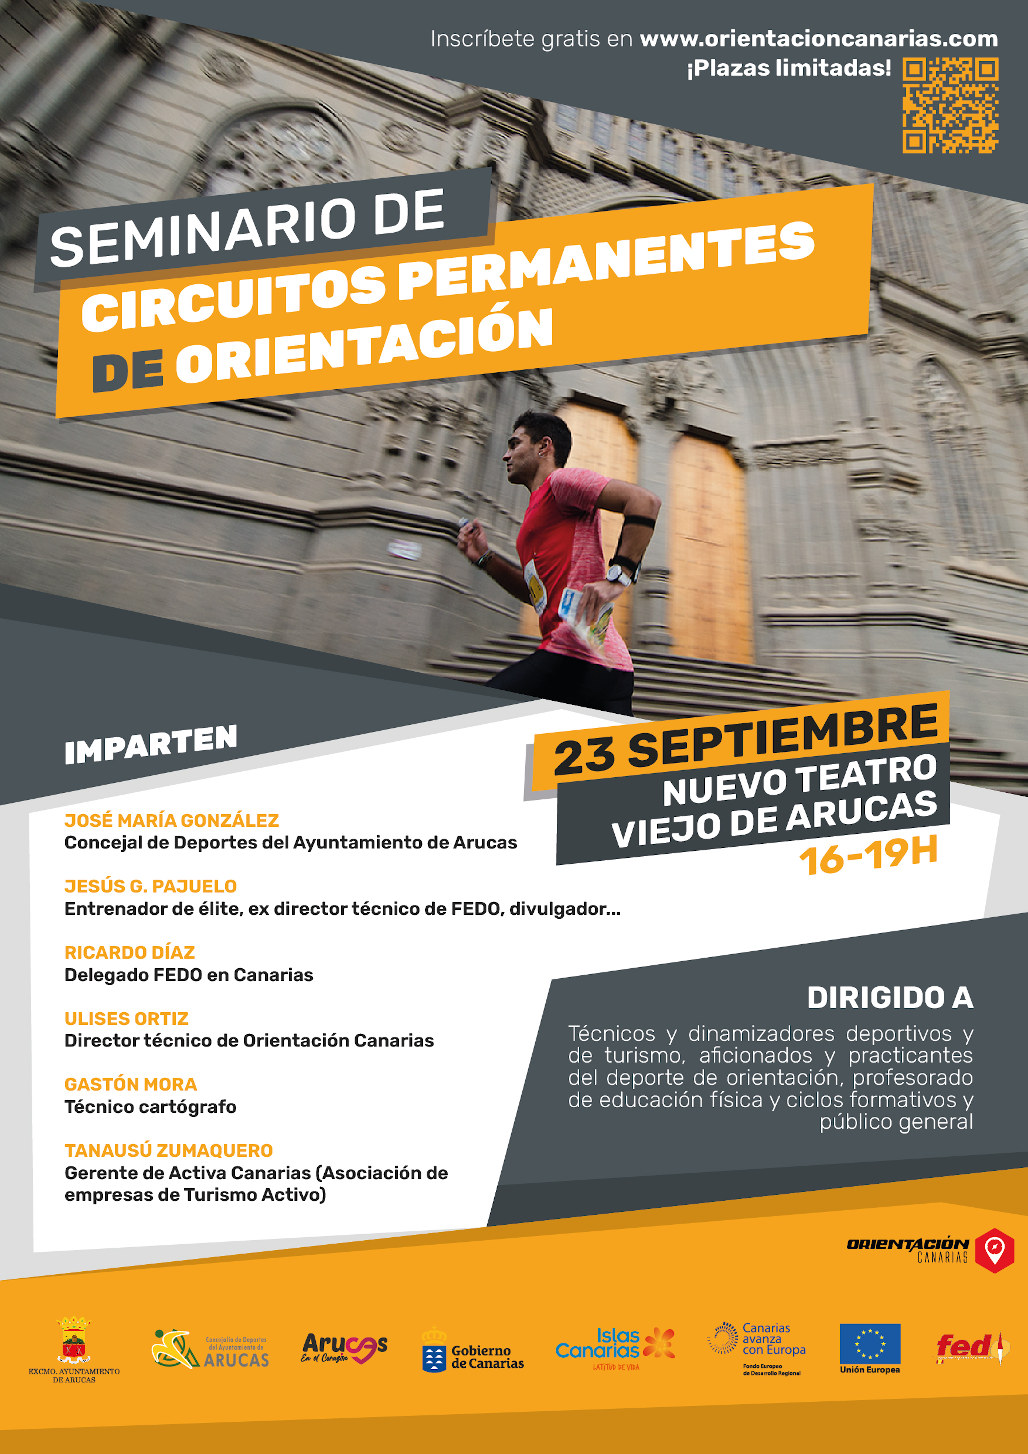 Arucas acogerá el próximo viernes 23 un seminario sobre Circuitos Permanentes de Orientación